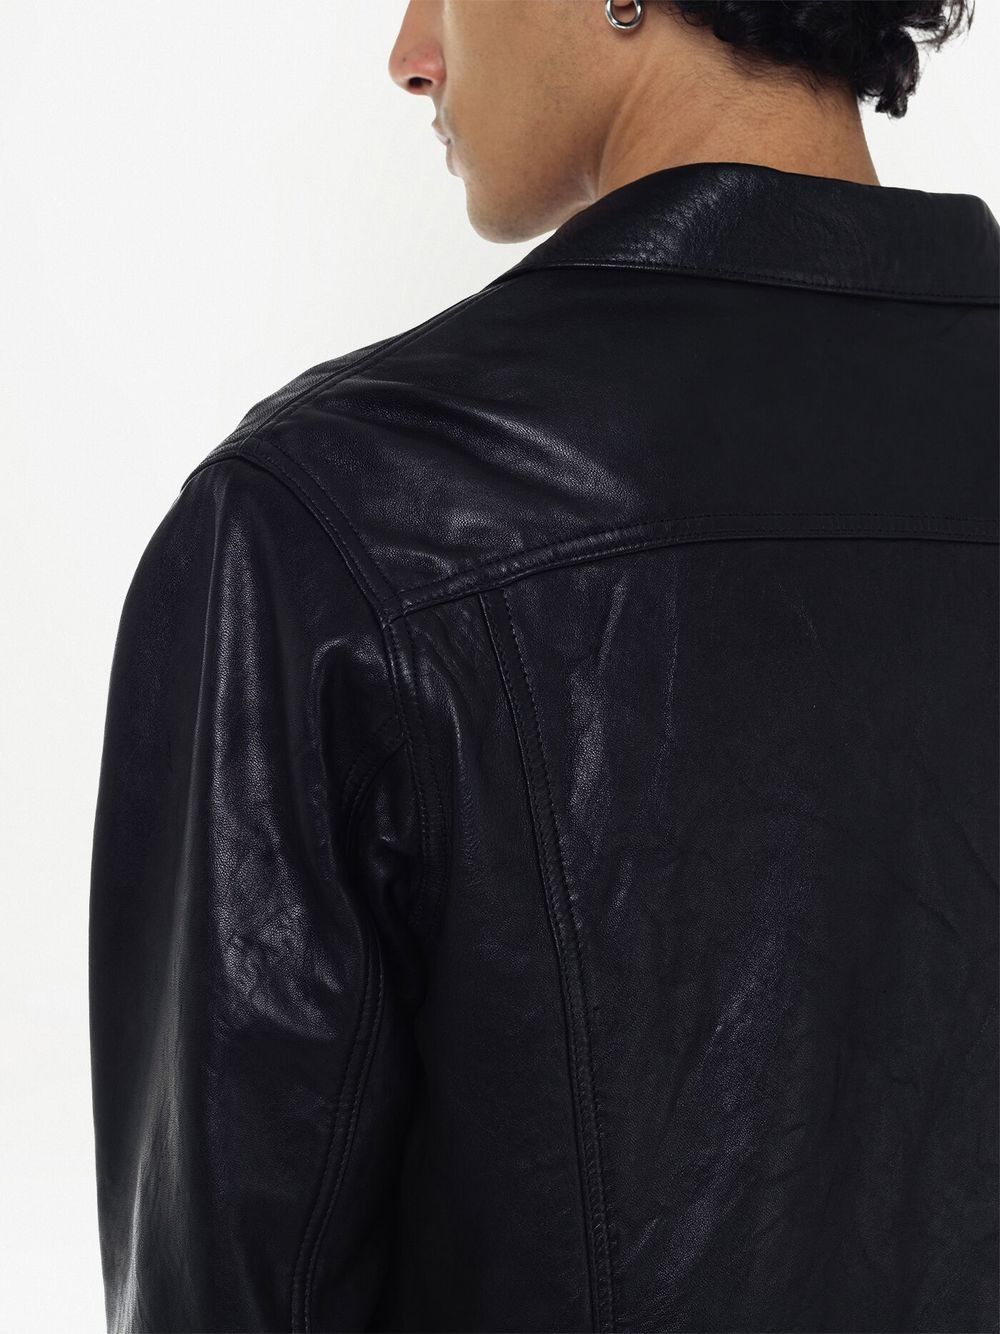 Shop John Elliott Thumper Type Iii Leather Jacket In Black